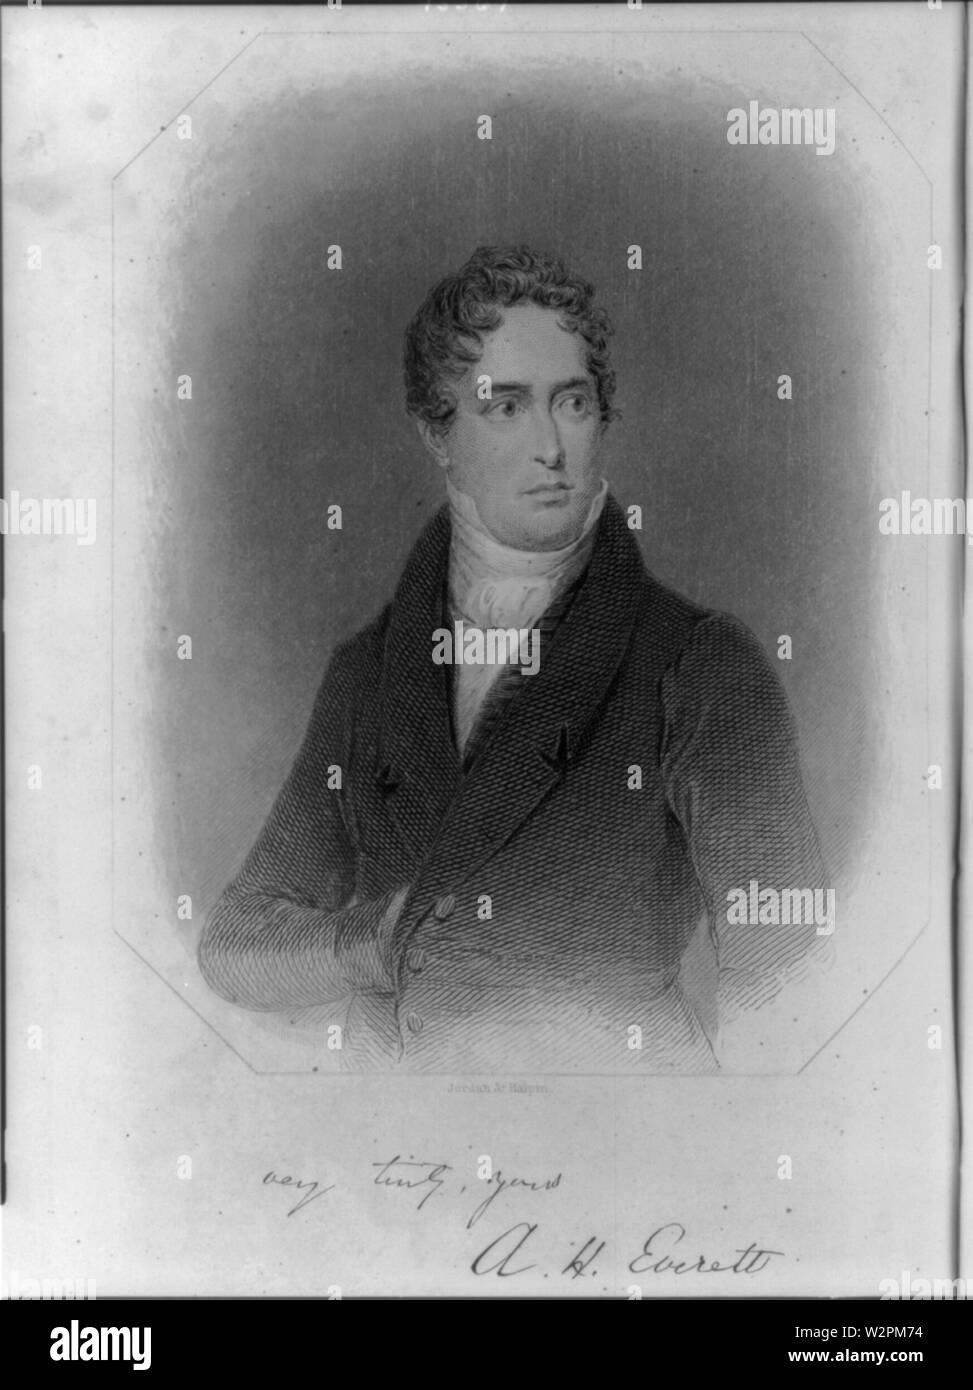 Hälfte - Porträt der amerikanischen Diplomaten und der Mann der Buchstaben en: Alexander Hill Everett (1790-1847), Blick leicht nach rechts. Gravur. Stockfoto